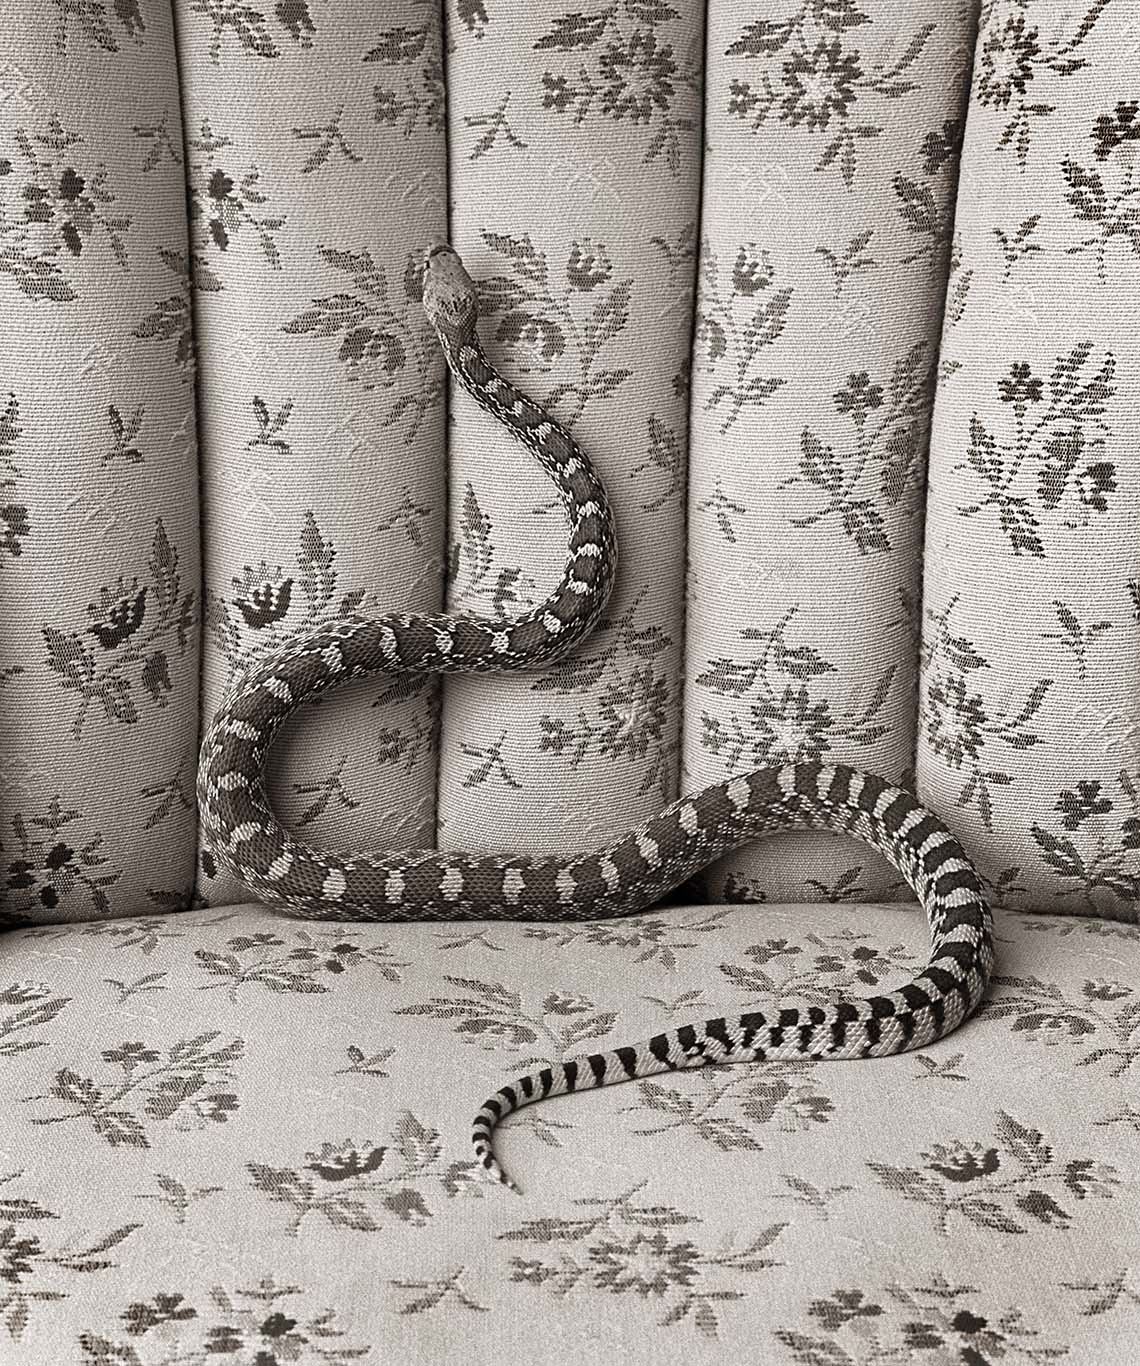 Bull Snake on Sofa_© James H. Evans